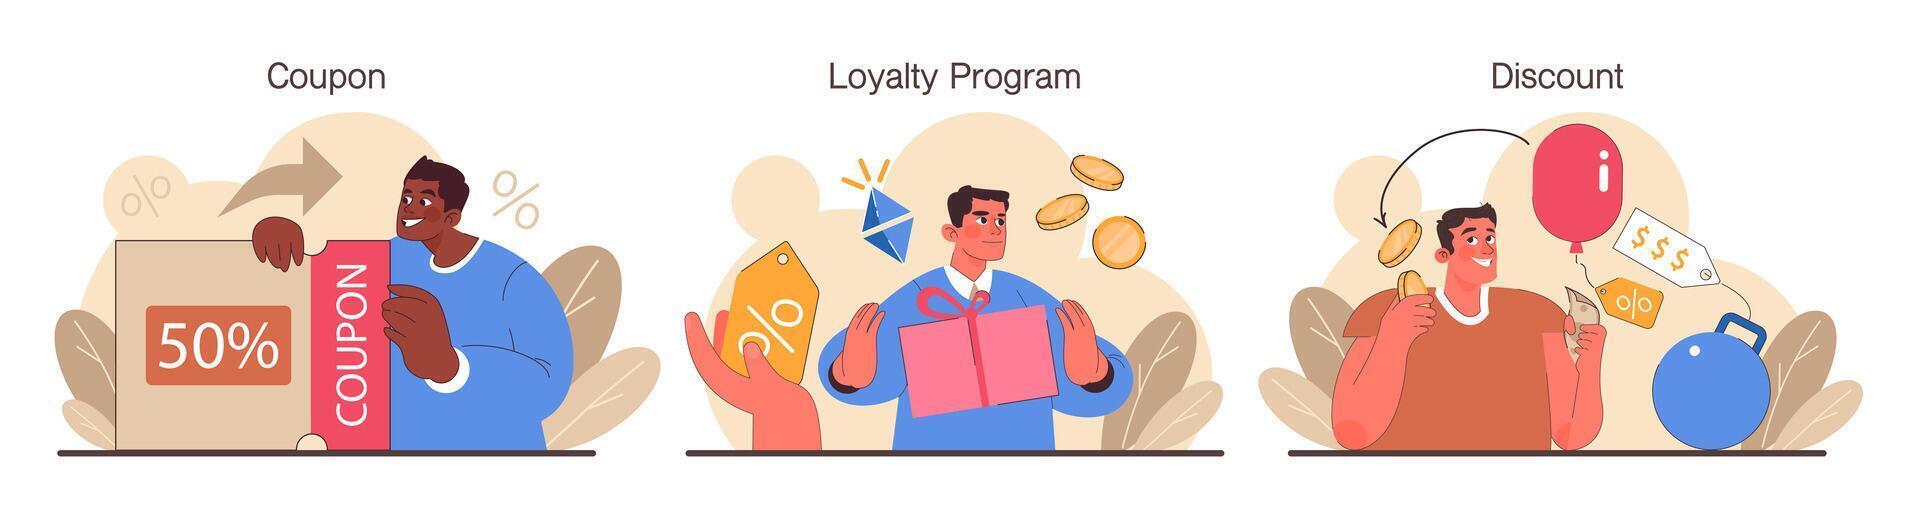 lealtad programa colocar. recompensas, ofertas, devolución de dinero y tarjeta puntos. comercial vector